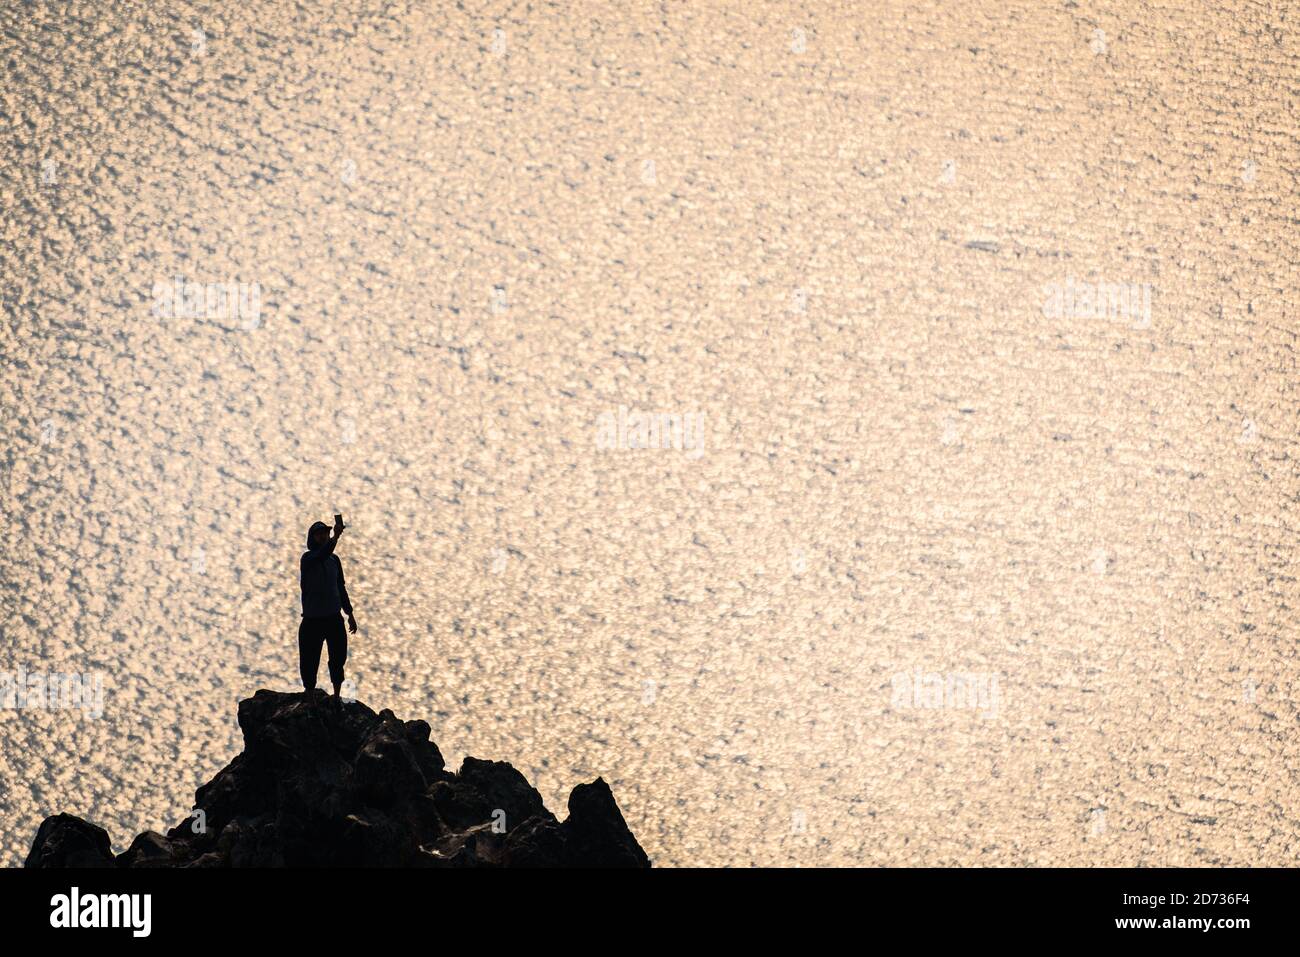 L'homme est silhoueté alors qu'il prend un selfie au-dessus du lac Crater, tandis que la fumée du feu de forêt obscurcit l'atmosphère au parc national de Crater Lake, Oregon, États-Unis. Banque D'Images